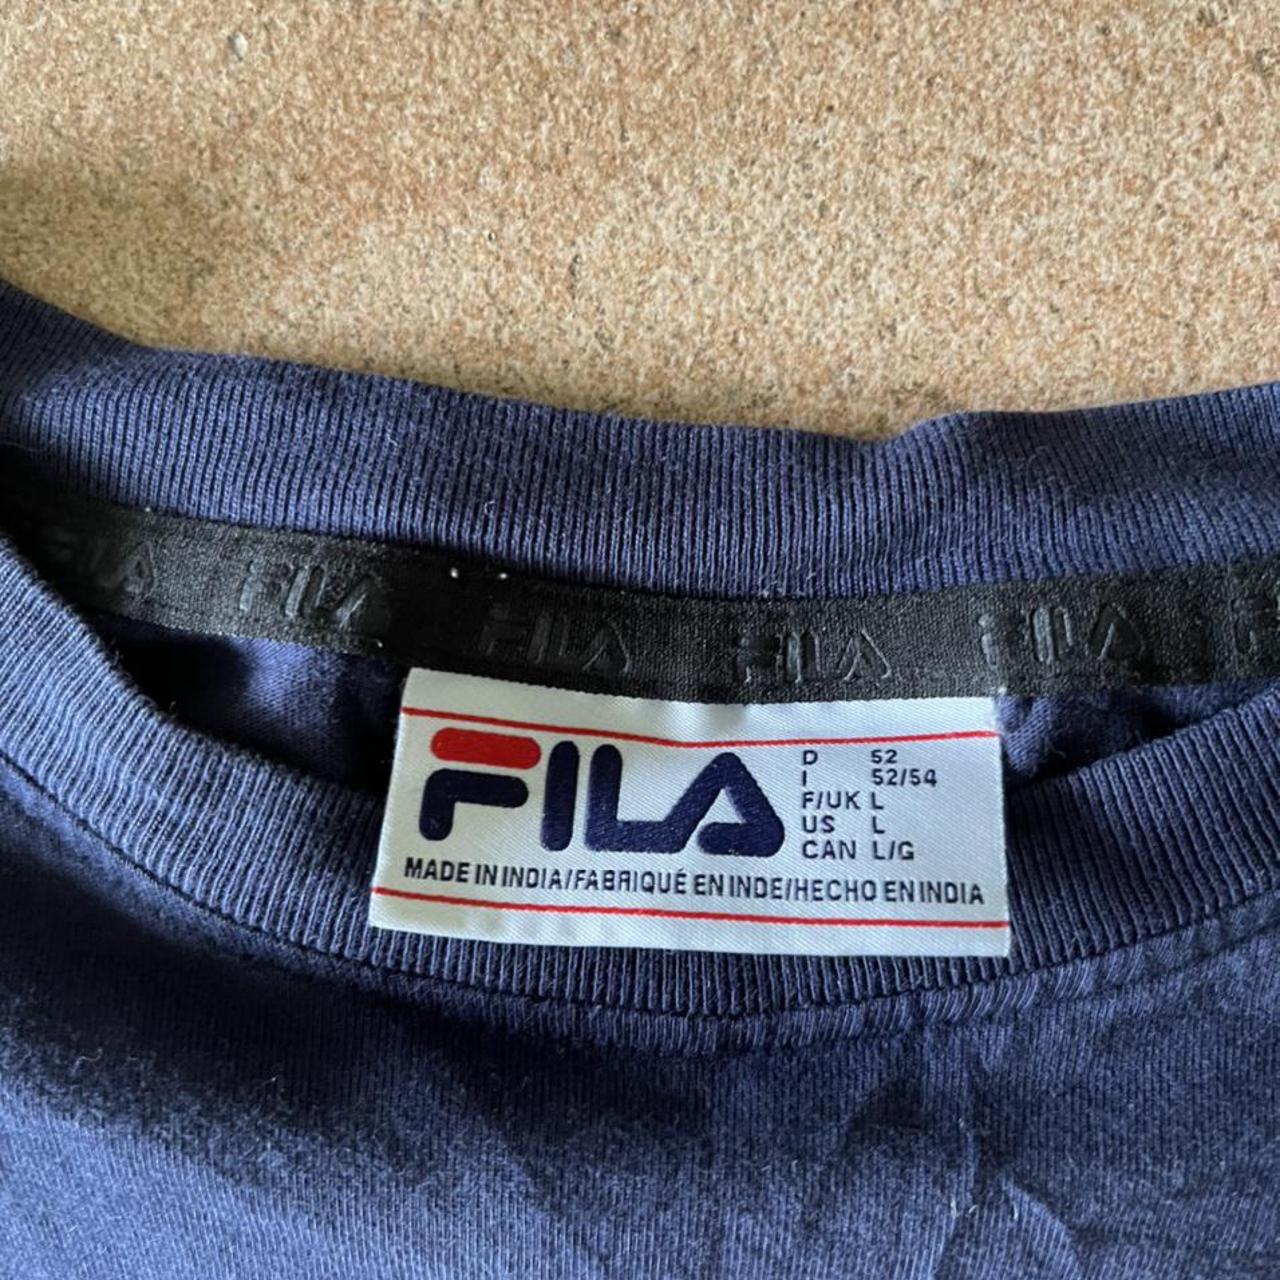 Product Image 3 - FILA Long Sleeve Shirt Size